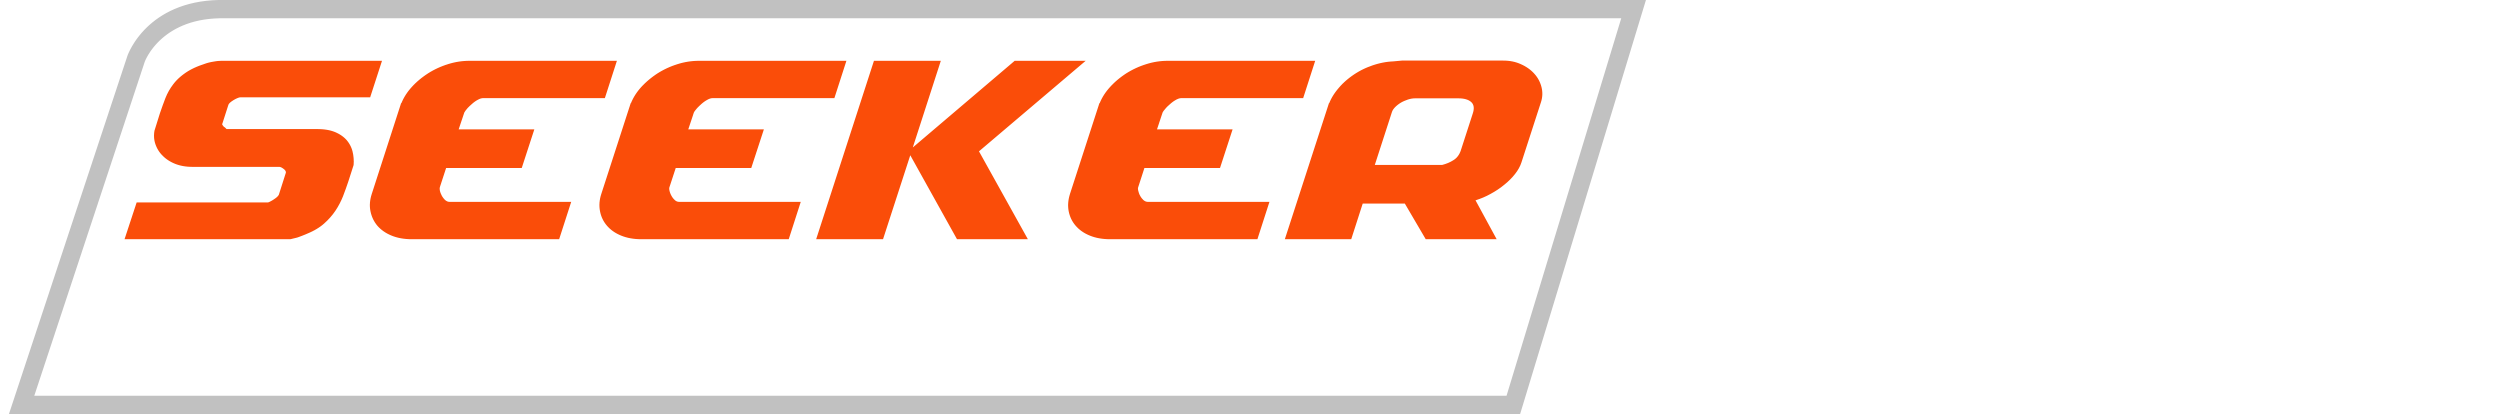 Seeker 60 Logo